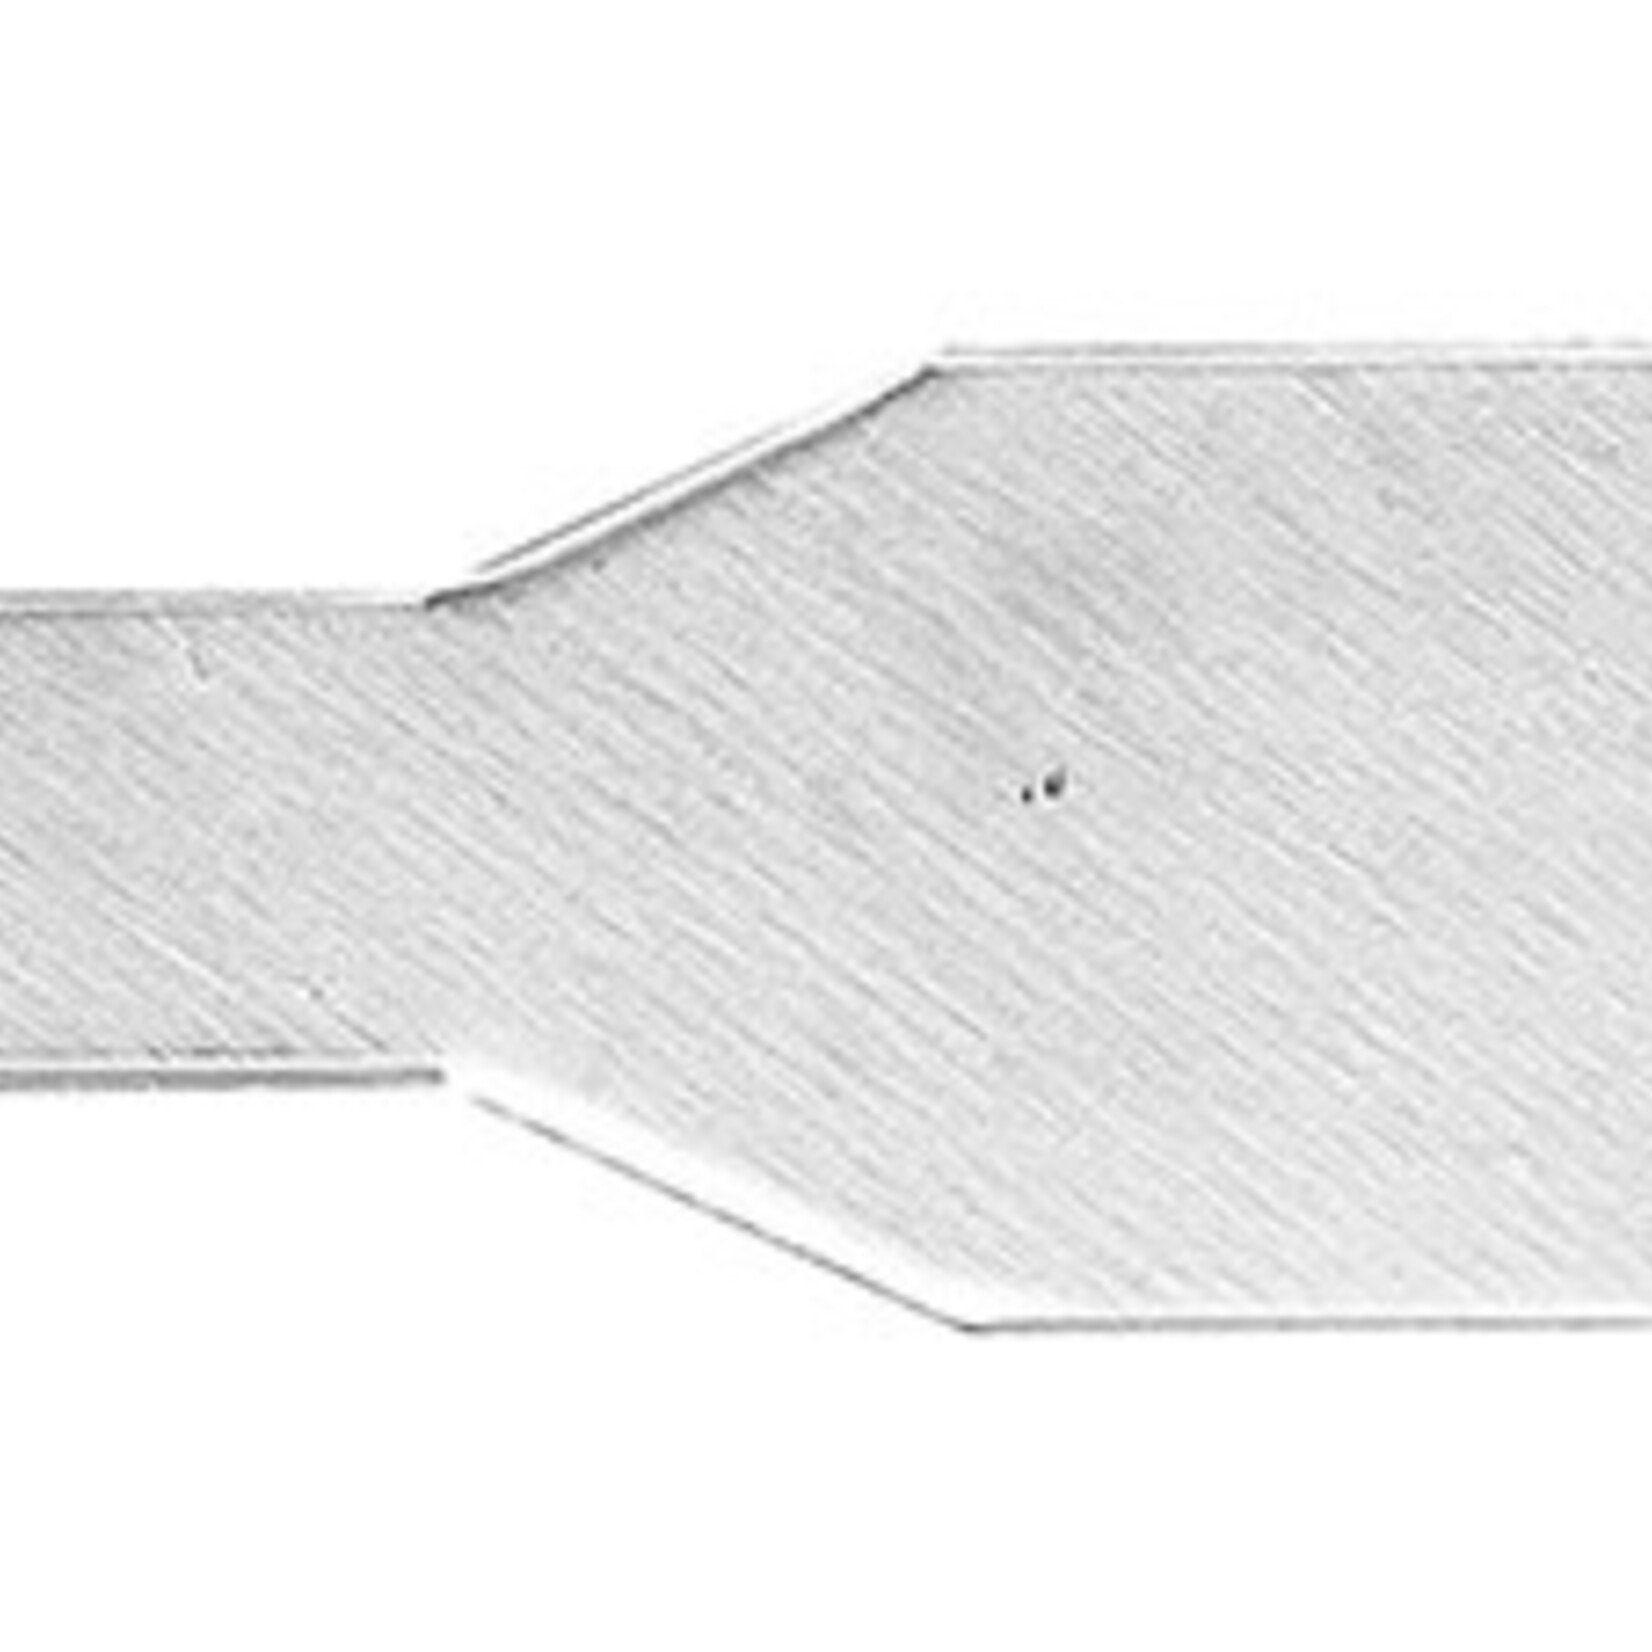 Vallejo #68 Stencil Edge Blades (5) - for No. 1 Handle